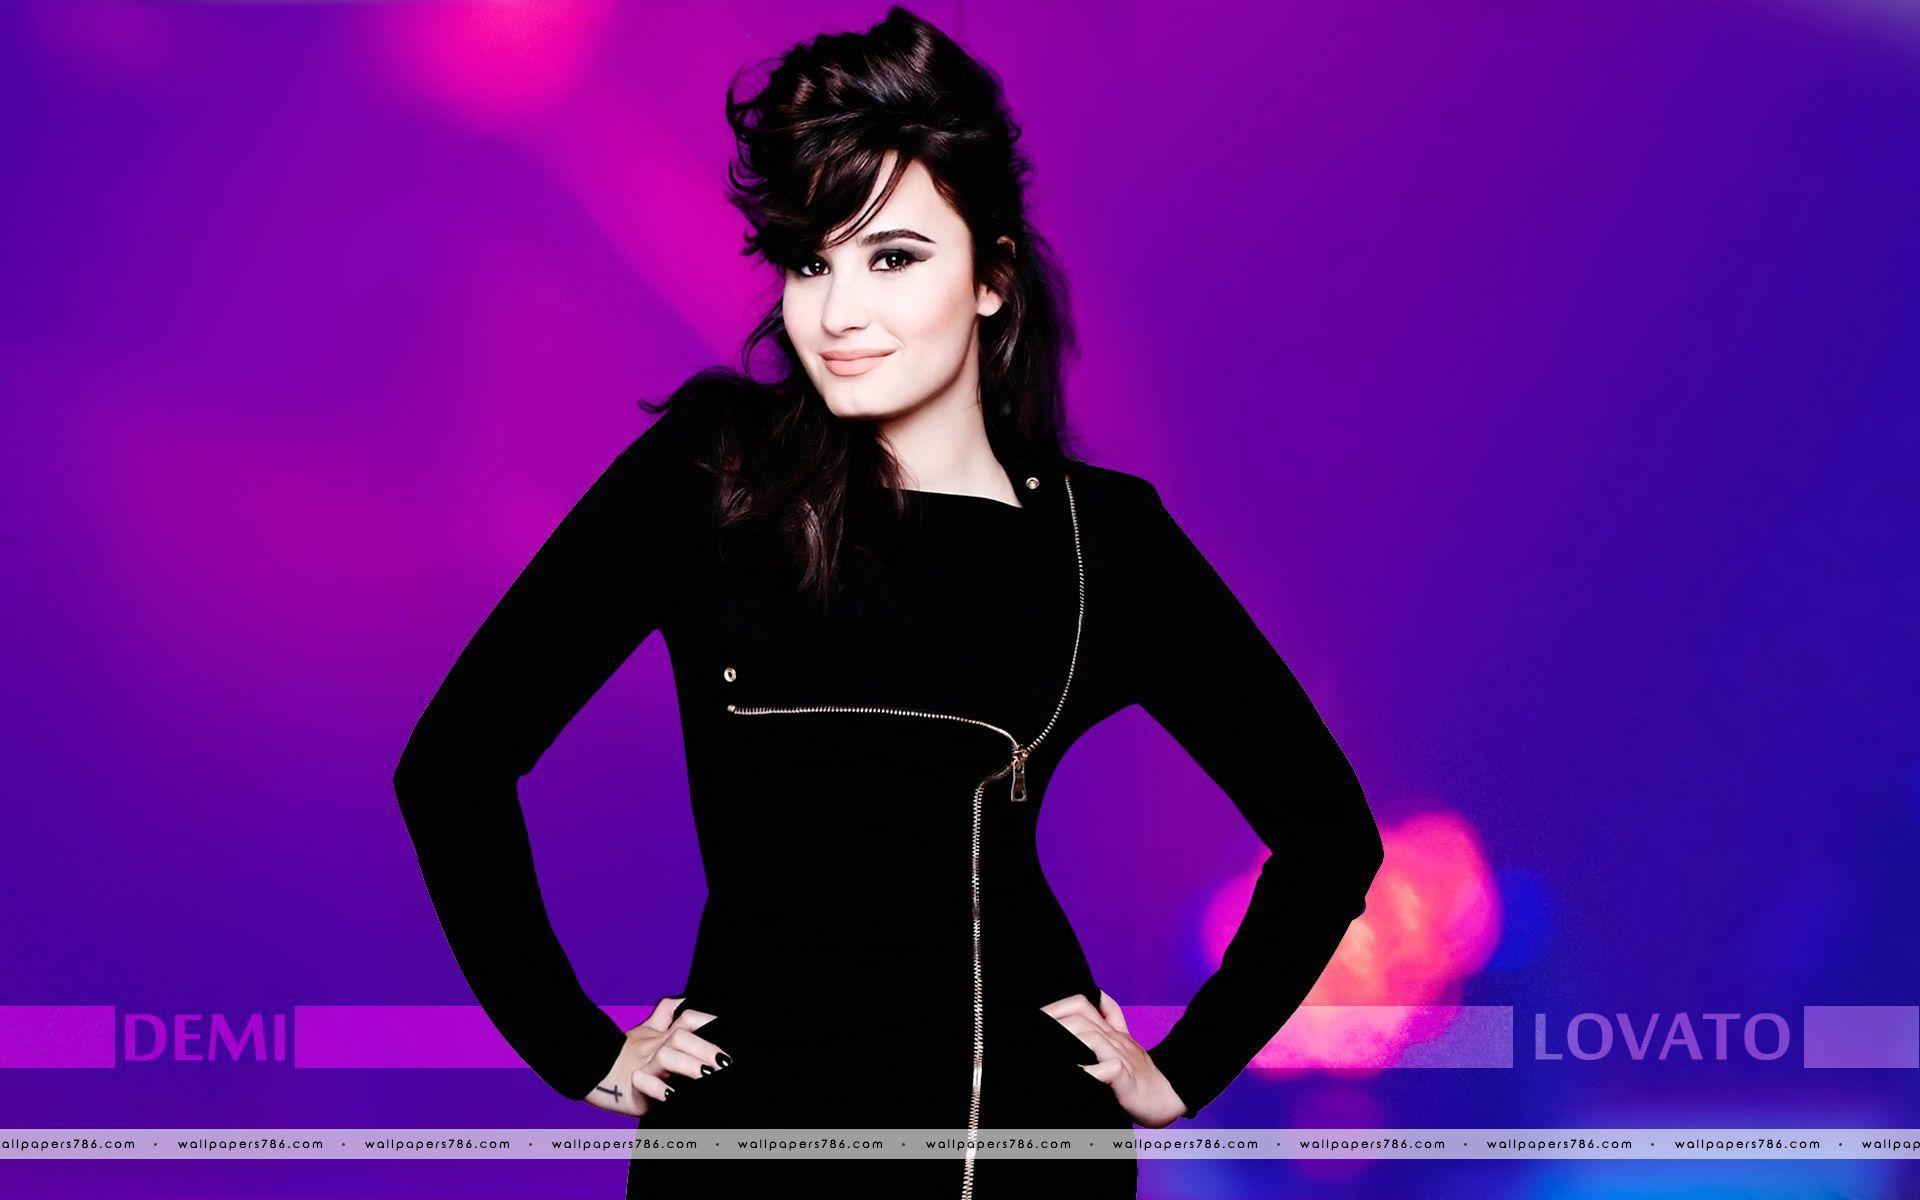 Demi Lovato Wallpaper Free Download HD